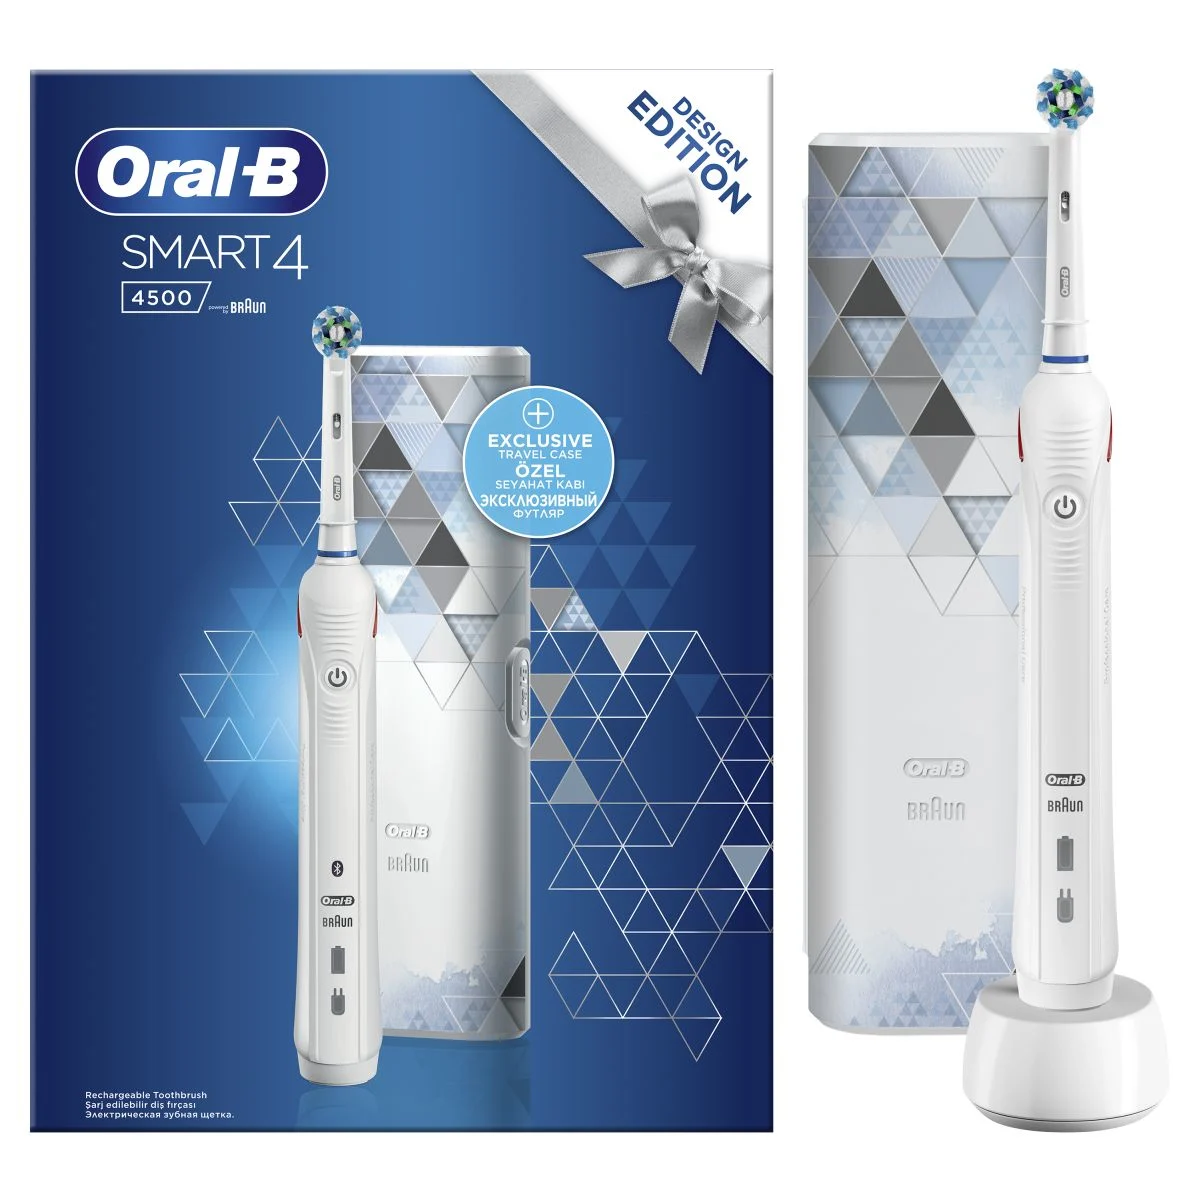 Oral-B Smart 4 -4500- Elektrikli Diş Fırçası 